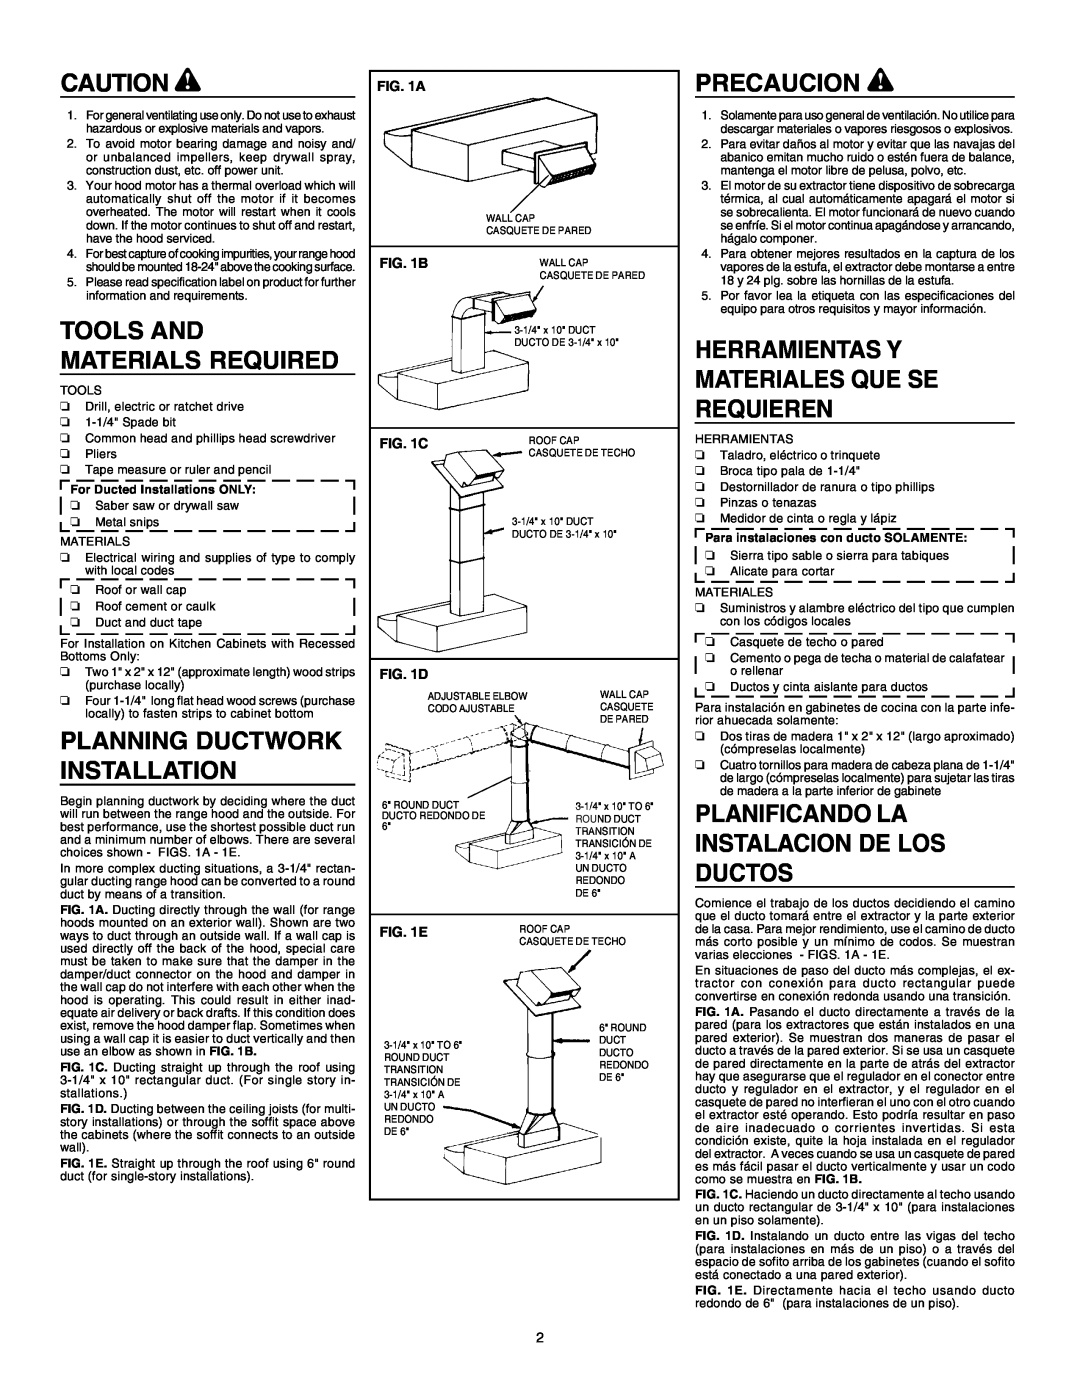 NuTone SM6500 warranty Precaucion, Herramientas Y Materiales Que Se Requieren, Planning Ductwork Installation, A, B, C, E 